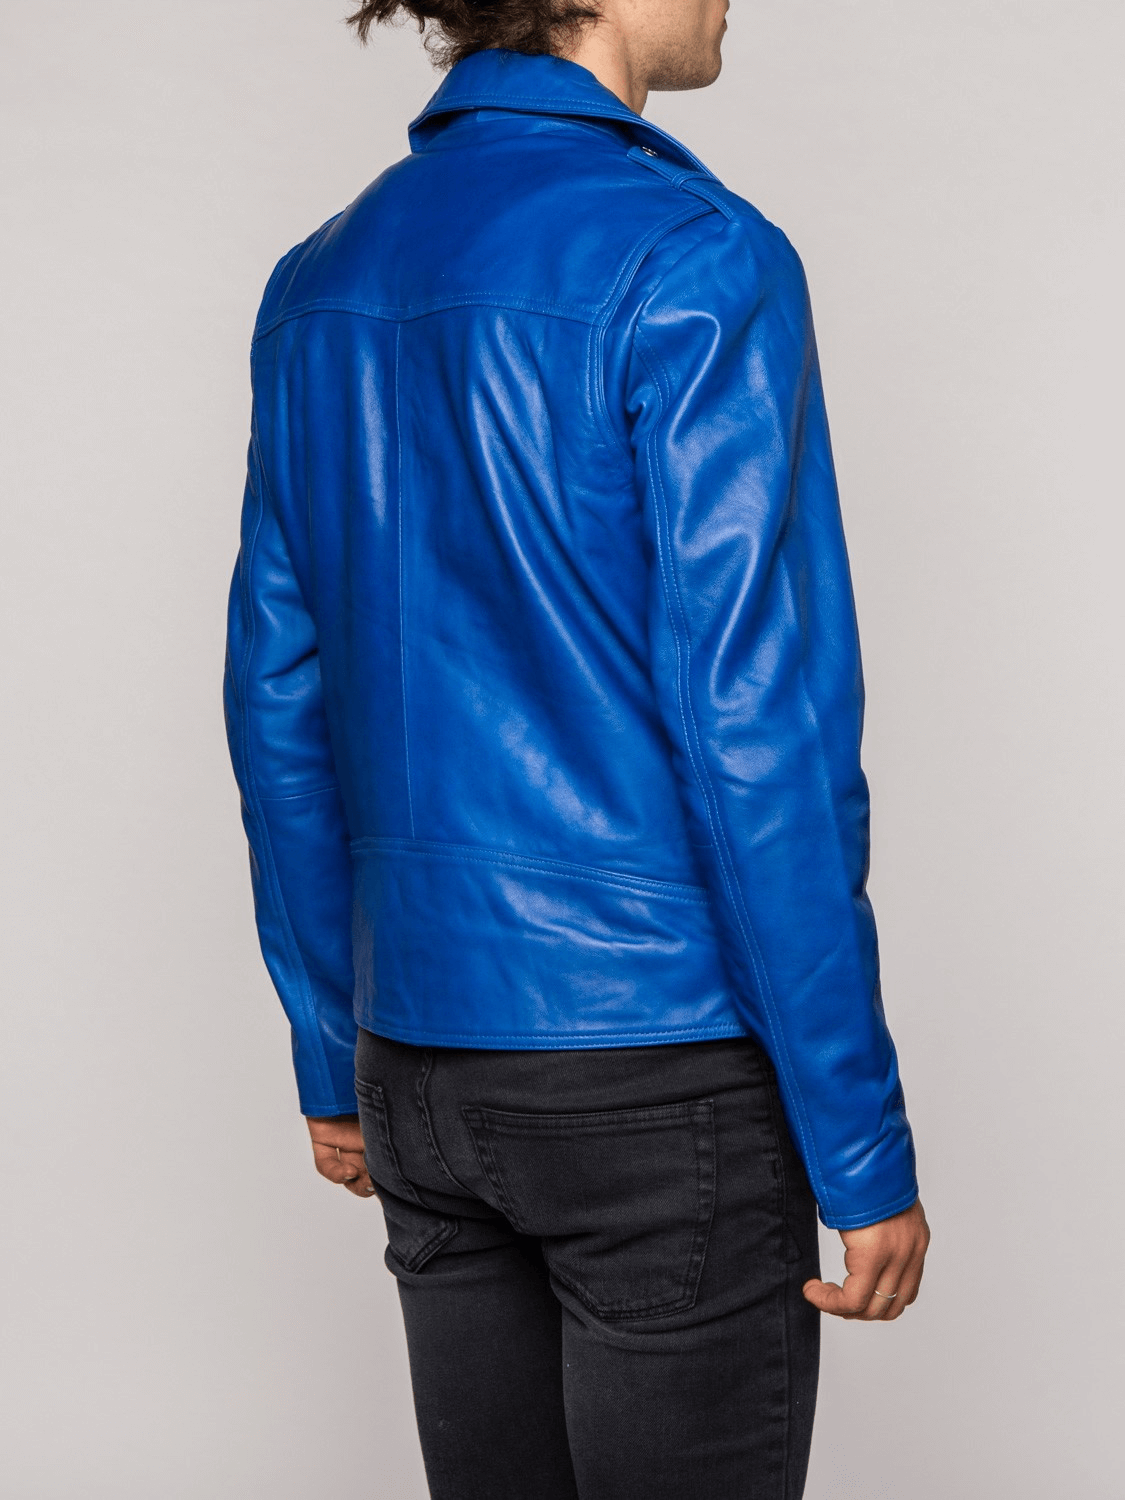 Belted Blue Leather Jacket